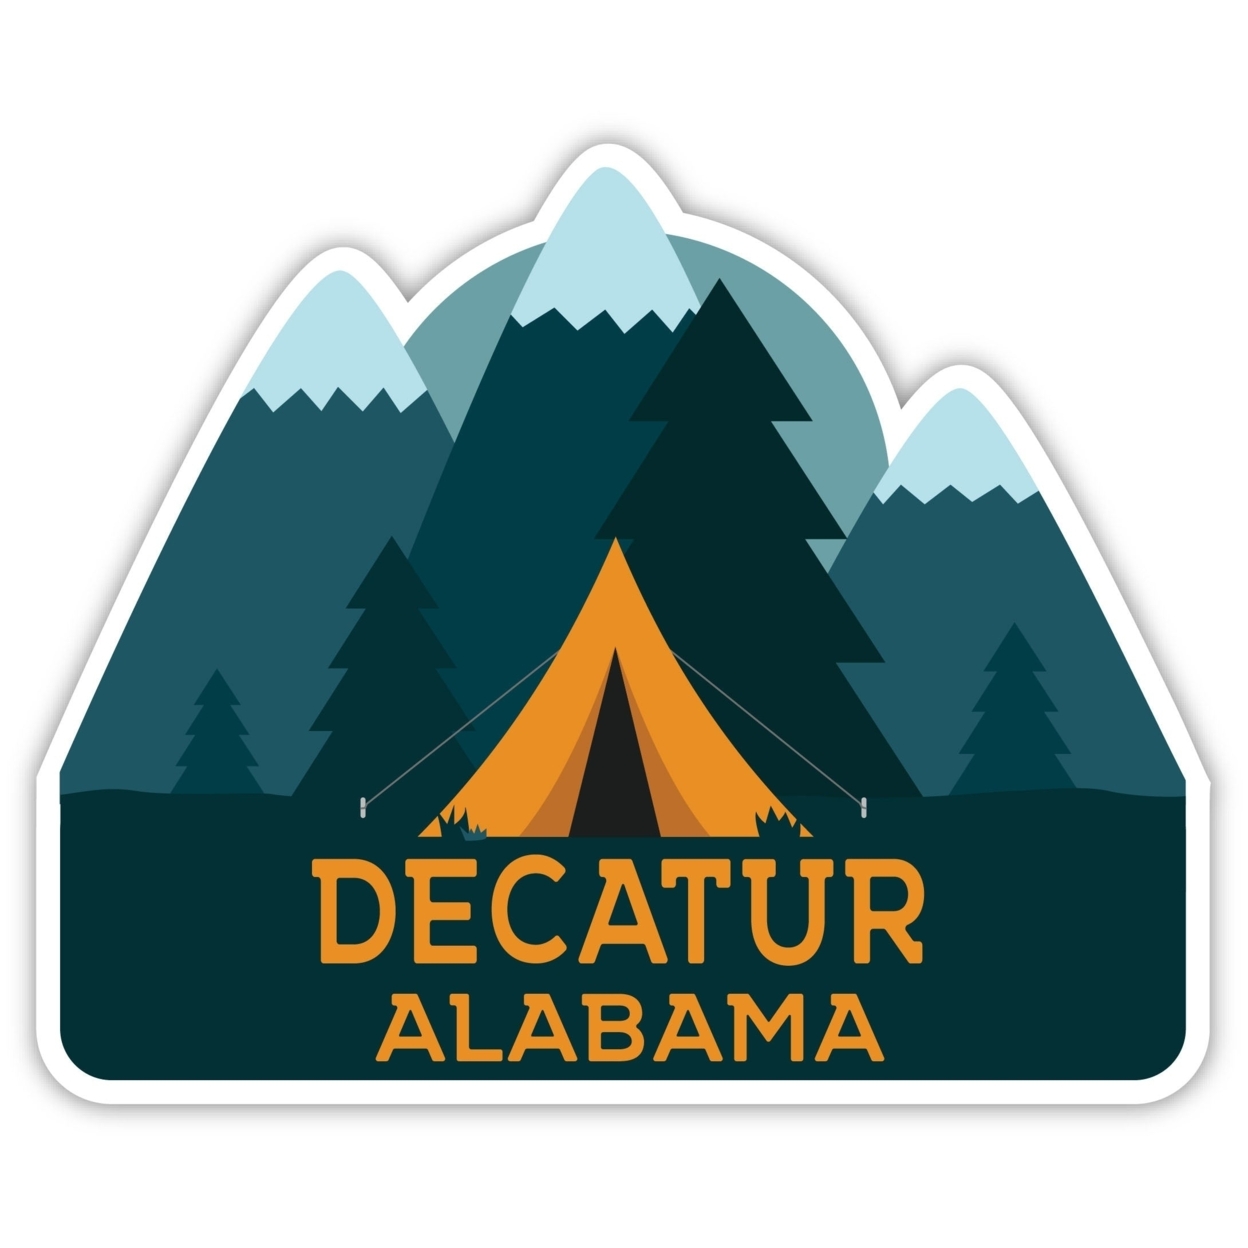 Decatur Alabama Souvenir Decorative Stickers (Choose Theme And Size) - Single Unit, 10-Inch, Tent